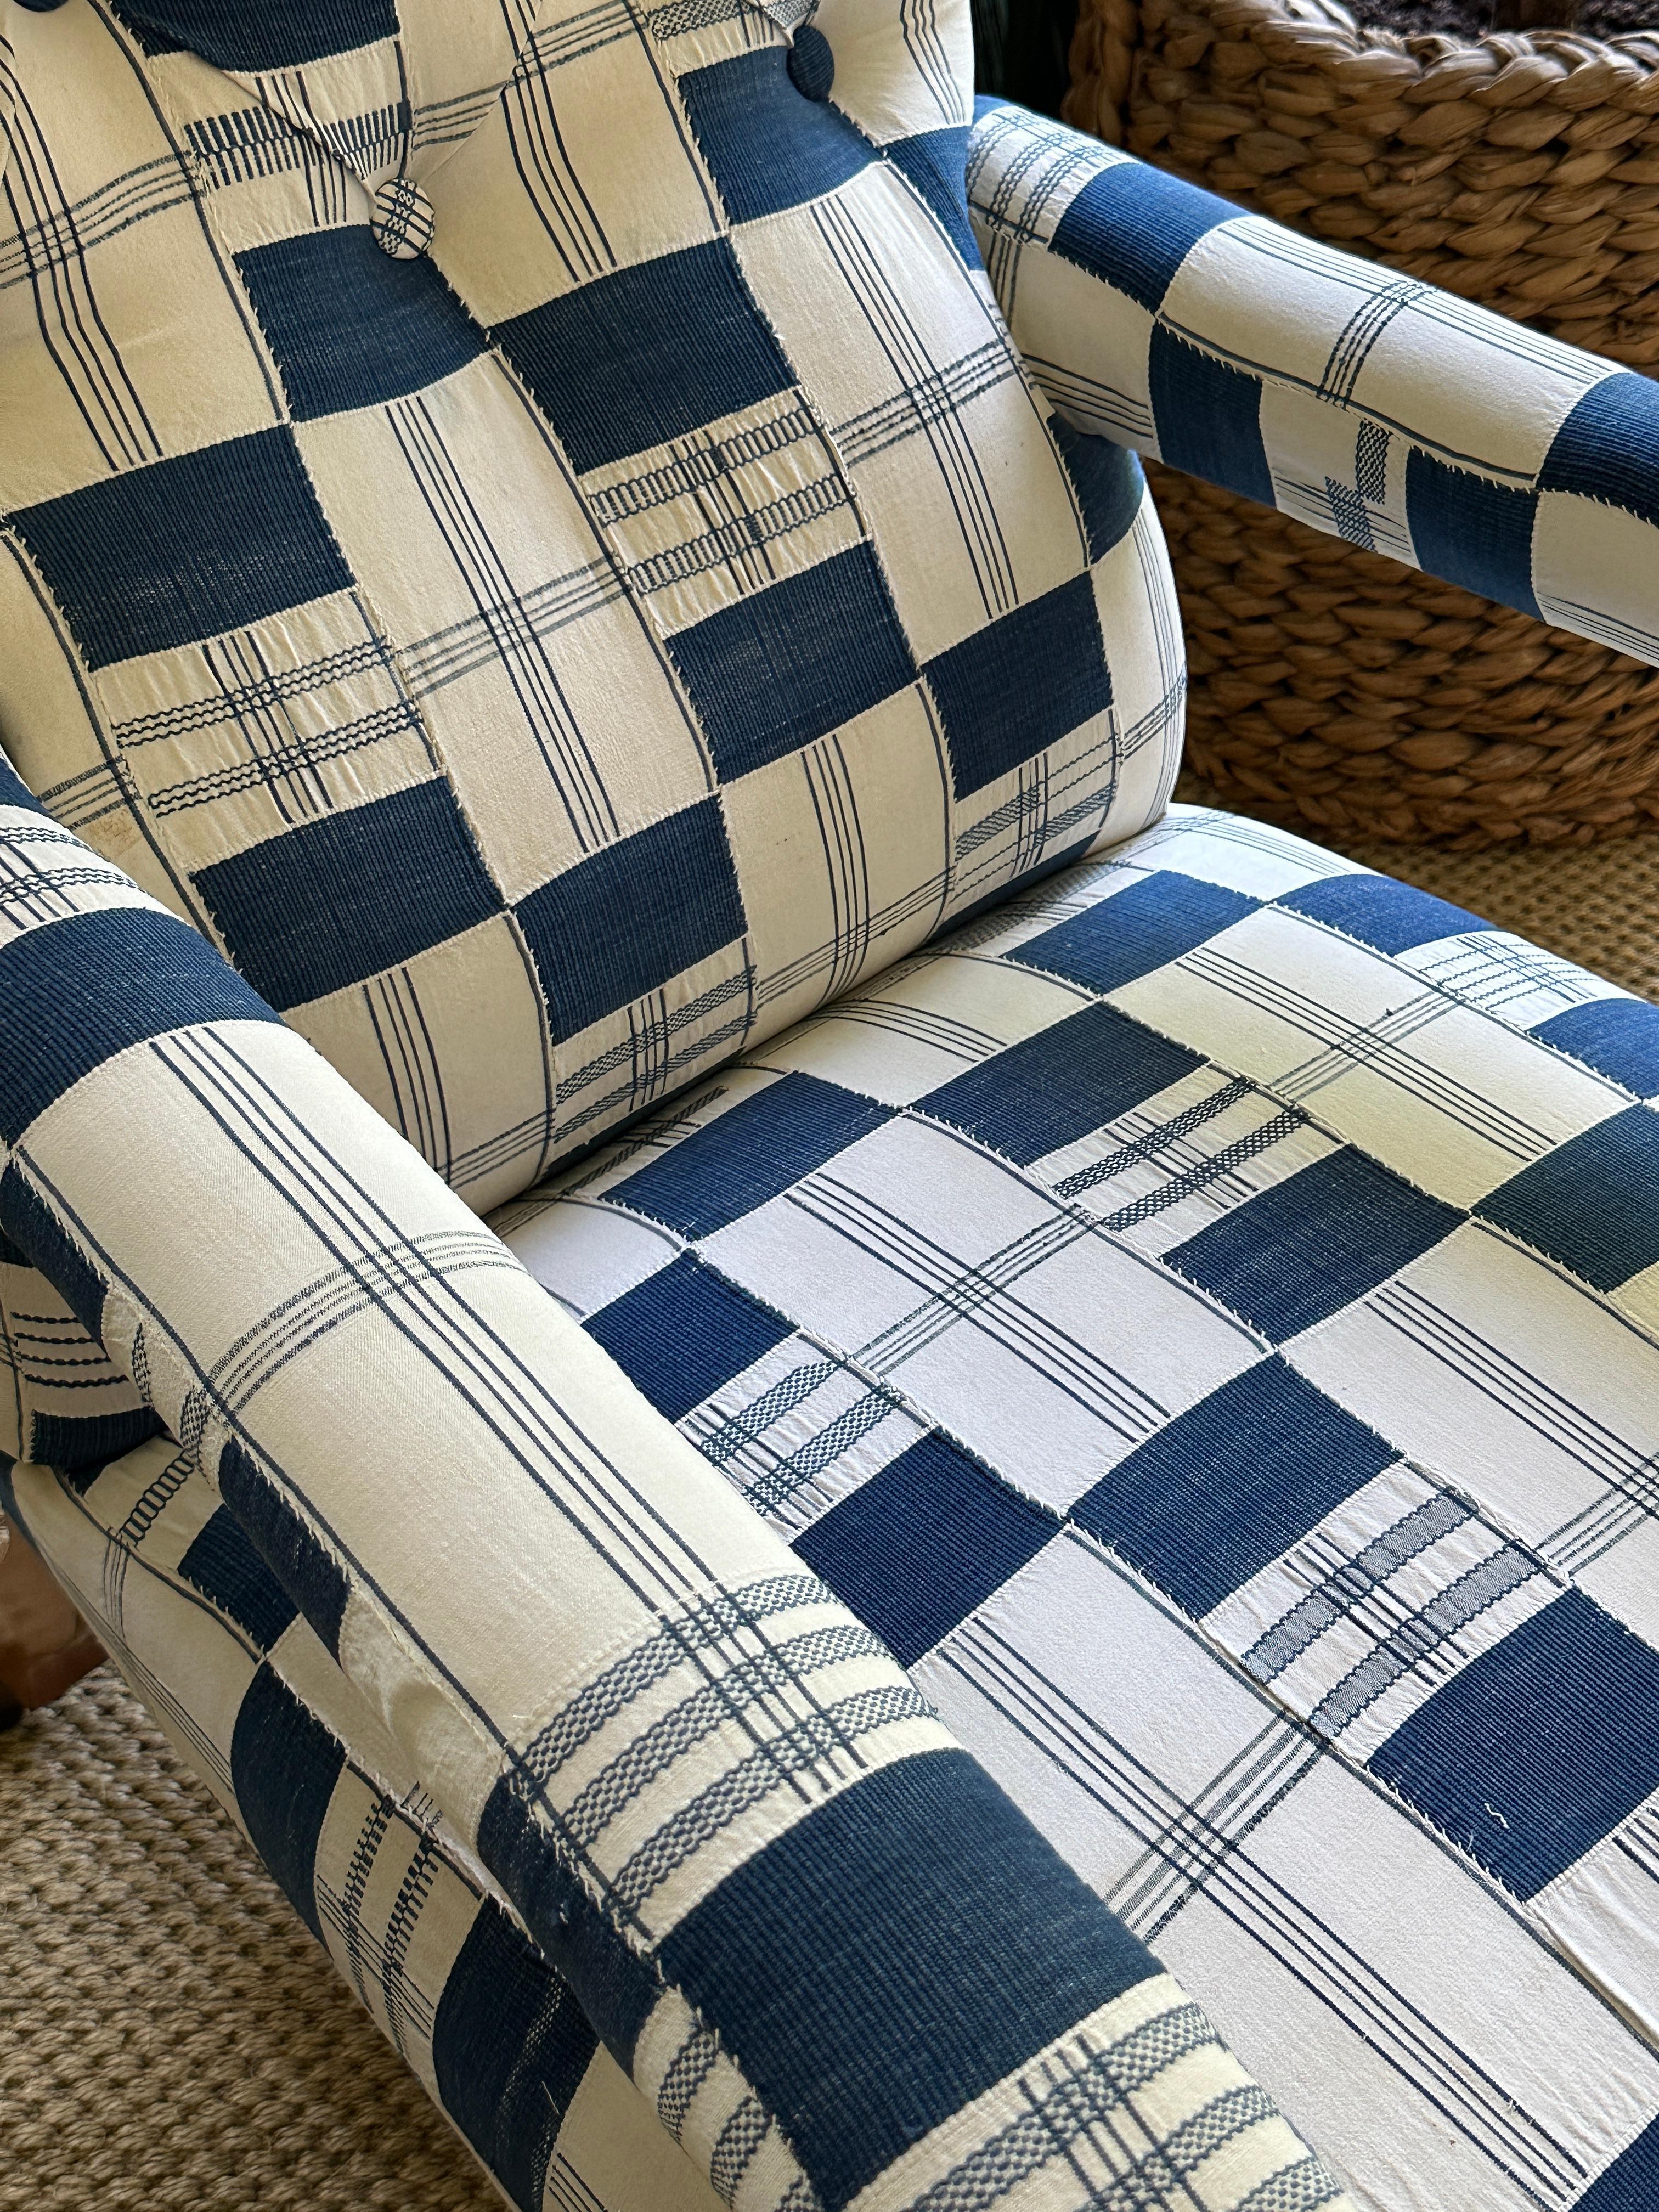 Offener Sessel von Hindley & Son aus Birkenholz aus der Mitte des 19. Jahrhunderts, gepolstert mit blau-weißem Kente-Stoff aus Ghana. Mitte des 19. Jahrhunderts.

Vollständig restauriert und neu gepolstert.